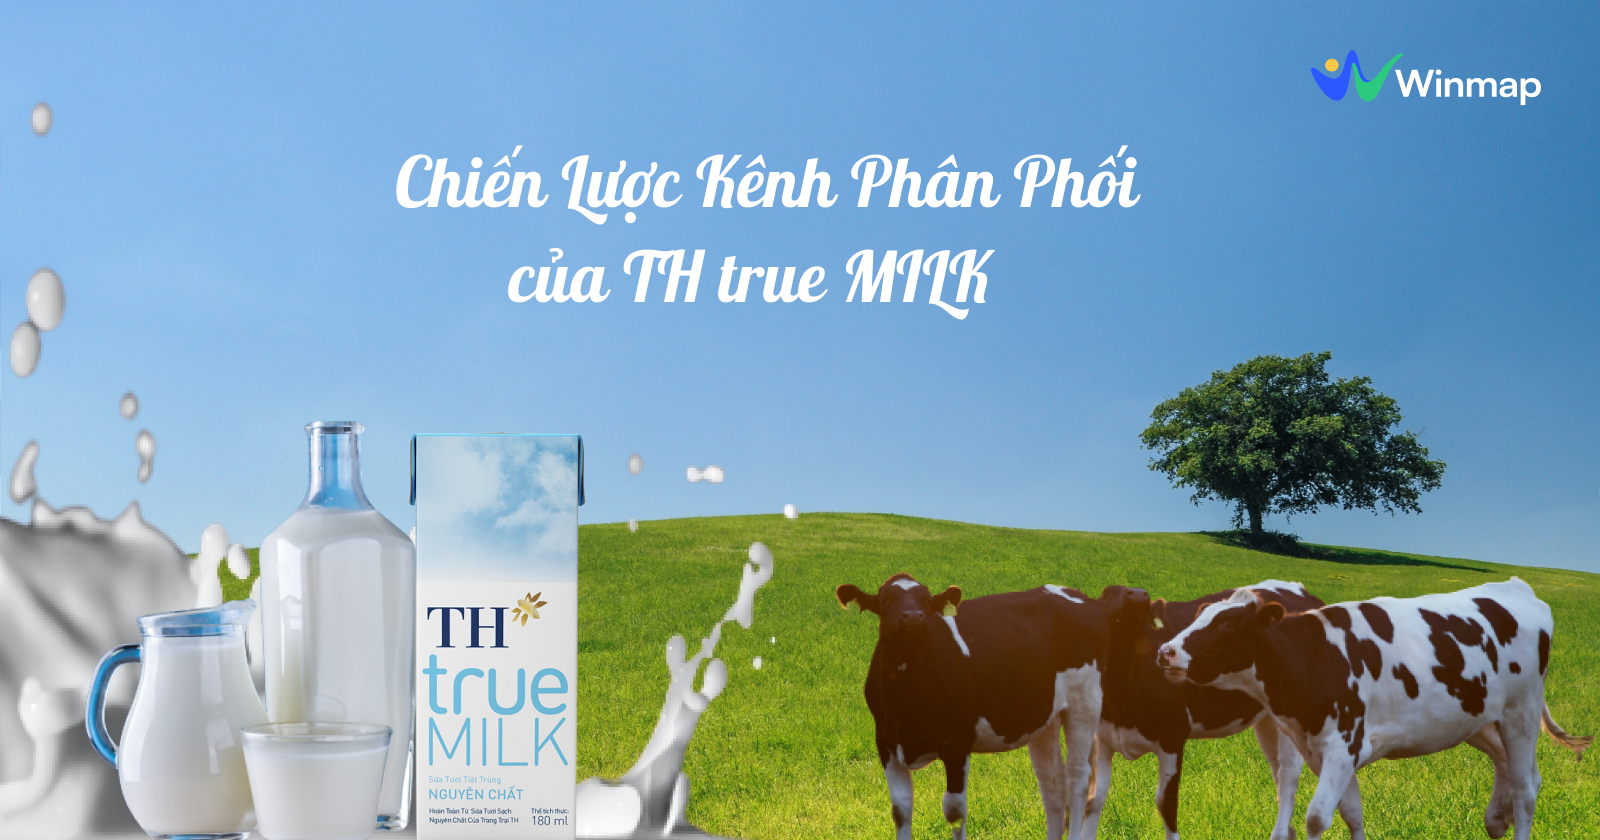 Chiến lược phân phối của TH true Milk